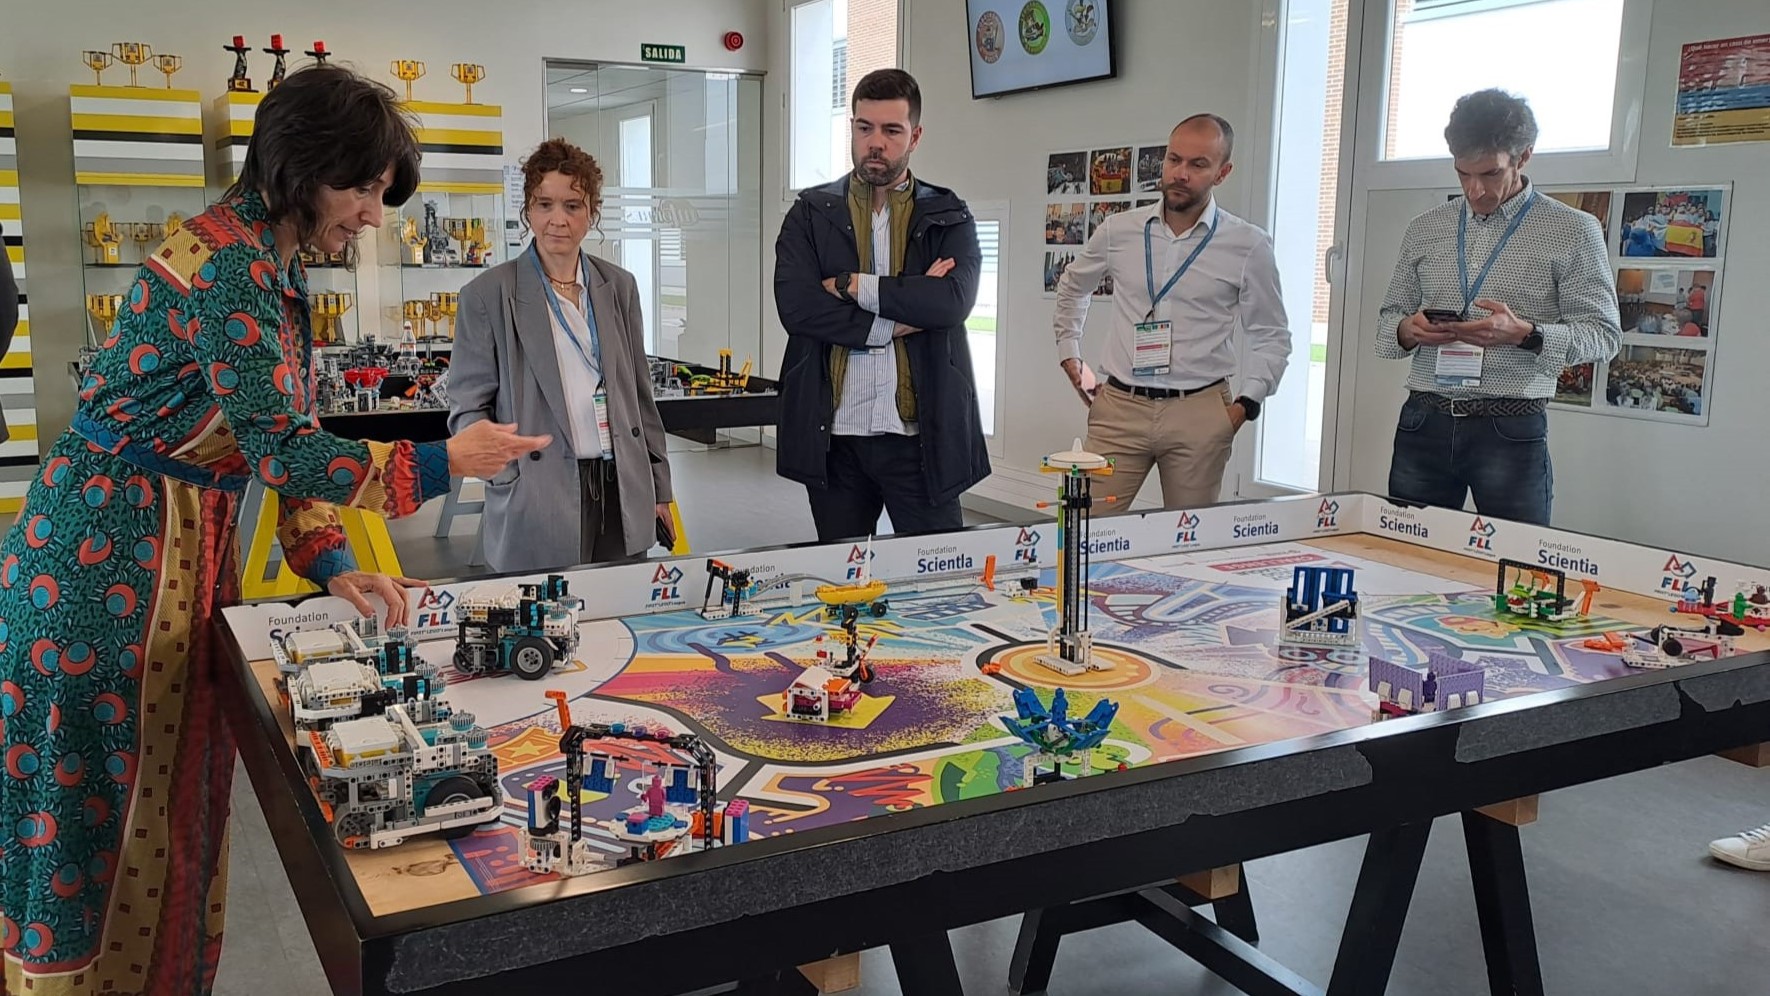 El proyecto Robotia visita la sede de MTorres y Florette para impulsar la industria 4.0 en el sector alimentario